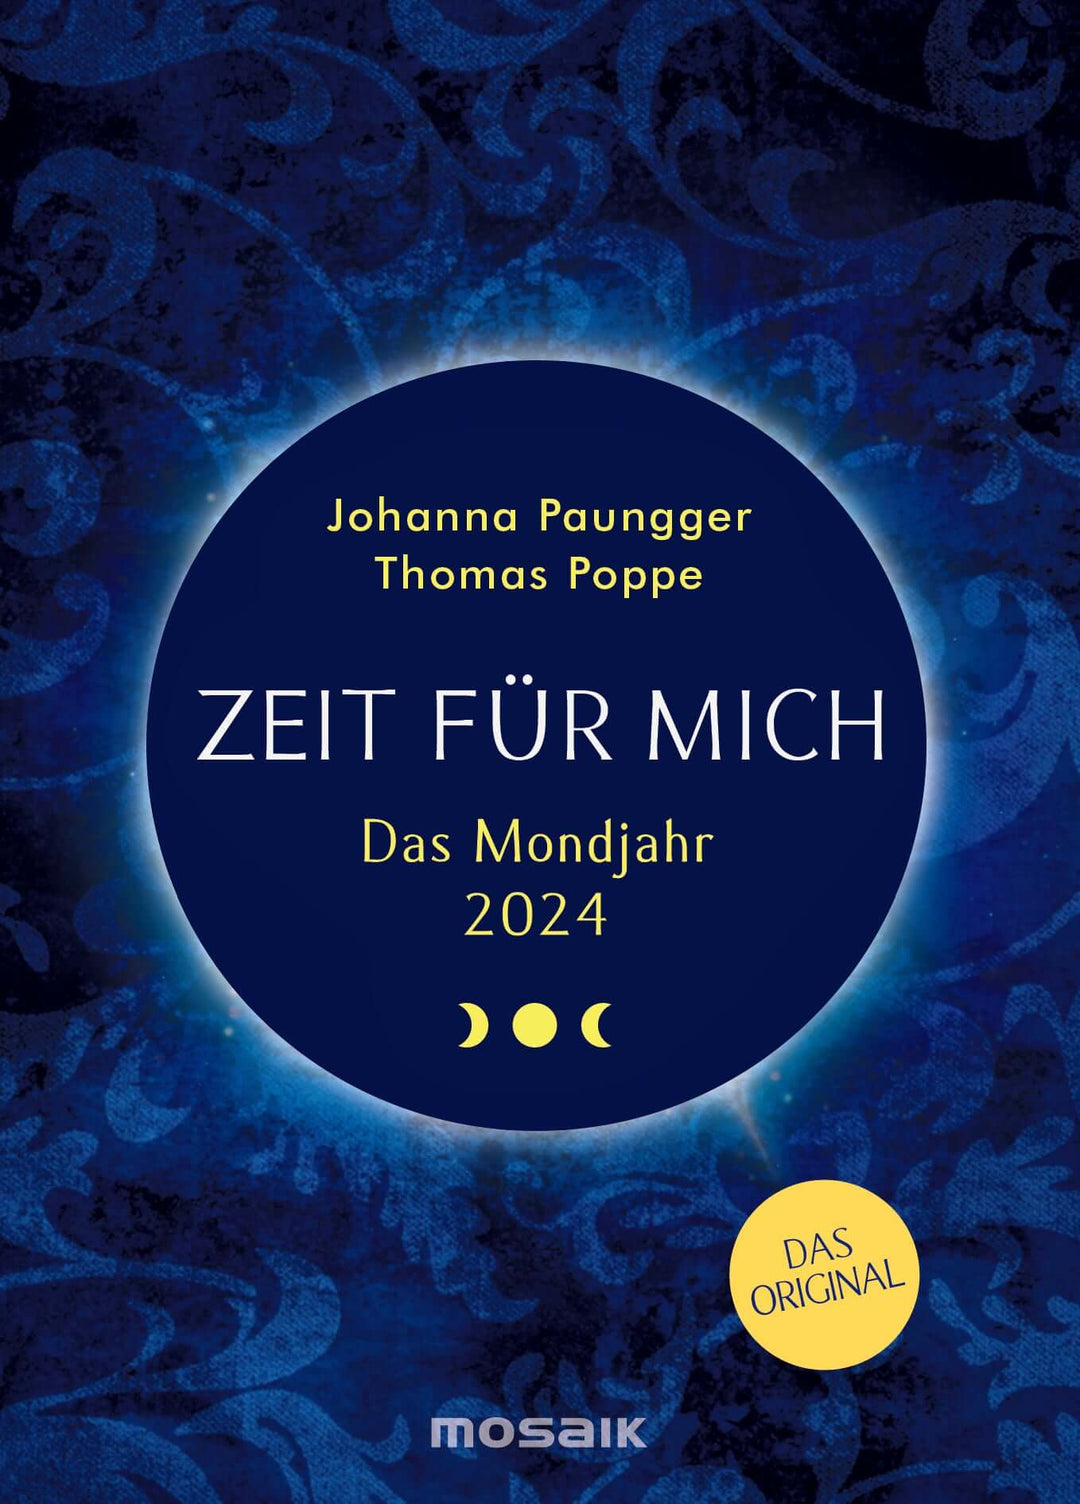 Das Mondjahr 2024 - "Zeit für mich" / Taschenkalender | Mondversand